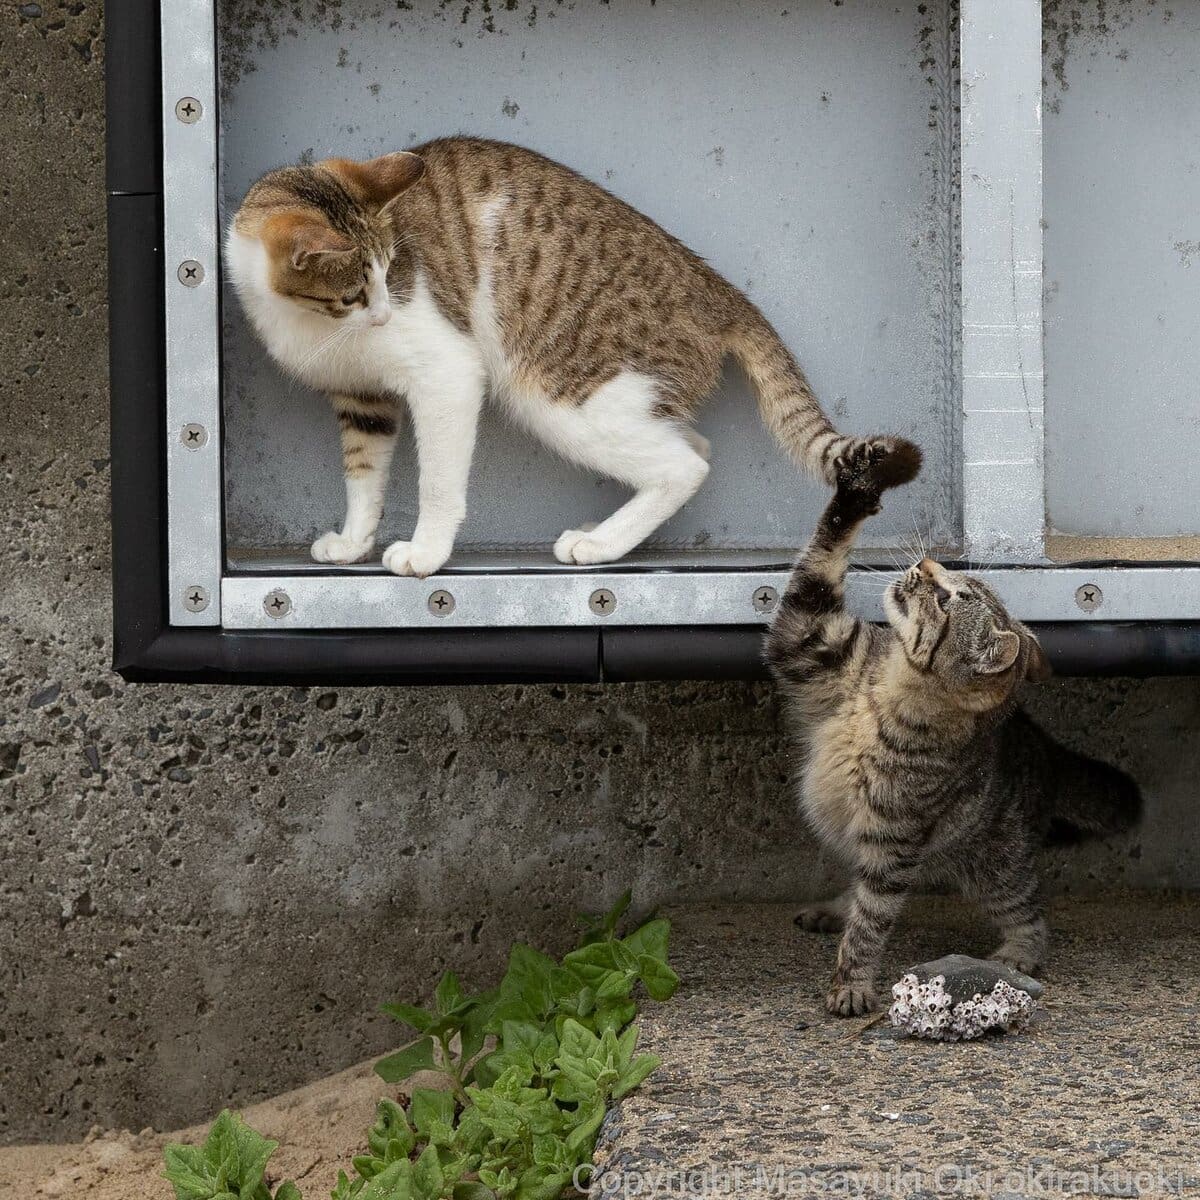 17 работ японского фотографа, который лучше всех в мире умеет снимать уличных котов 55